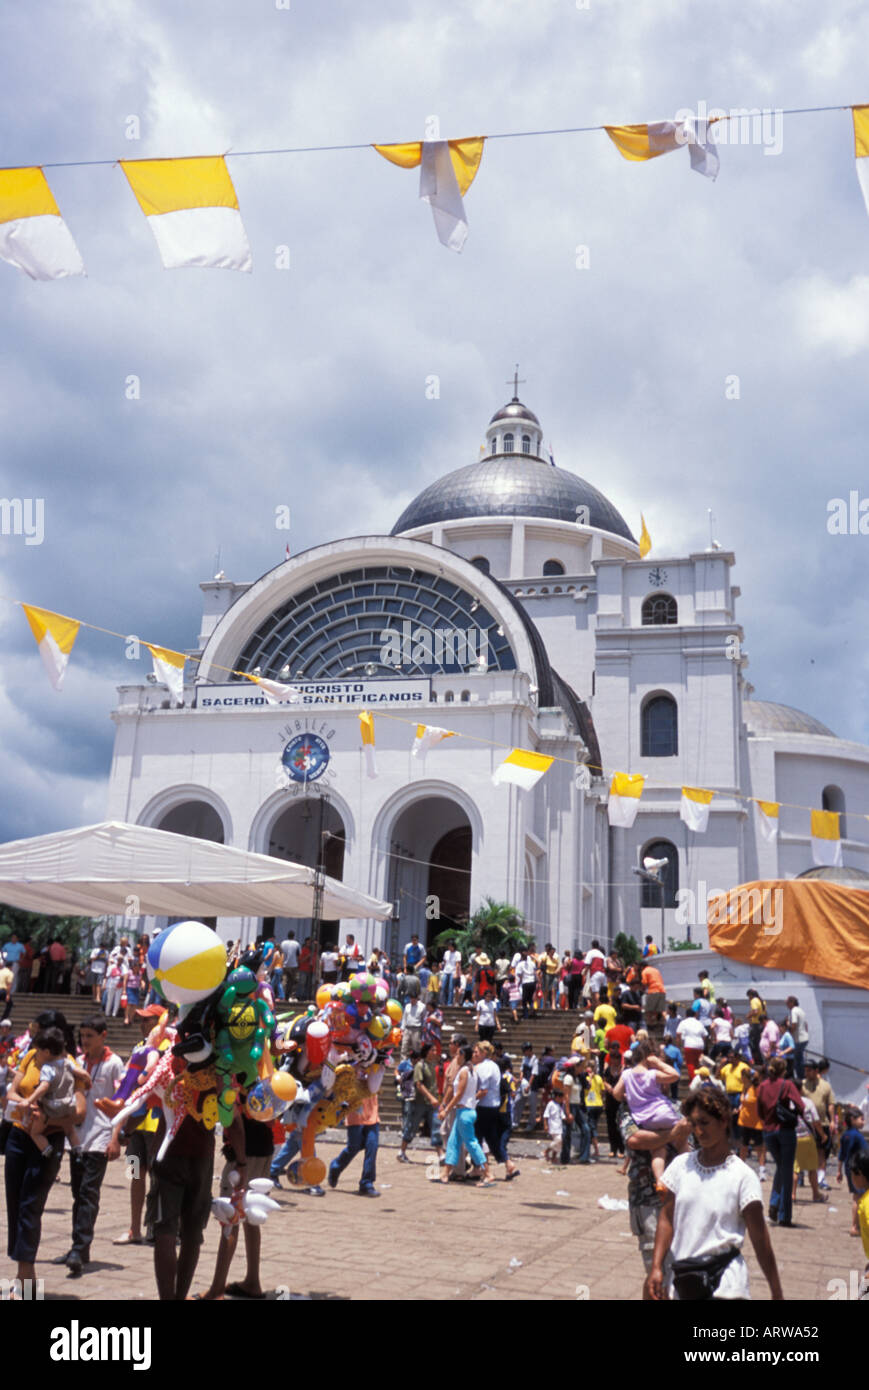 Basilica de Nuestra Señora de los Milagros caacupé paraguay during The Dia de la Concepcion Immaculate Conception Stock Photo